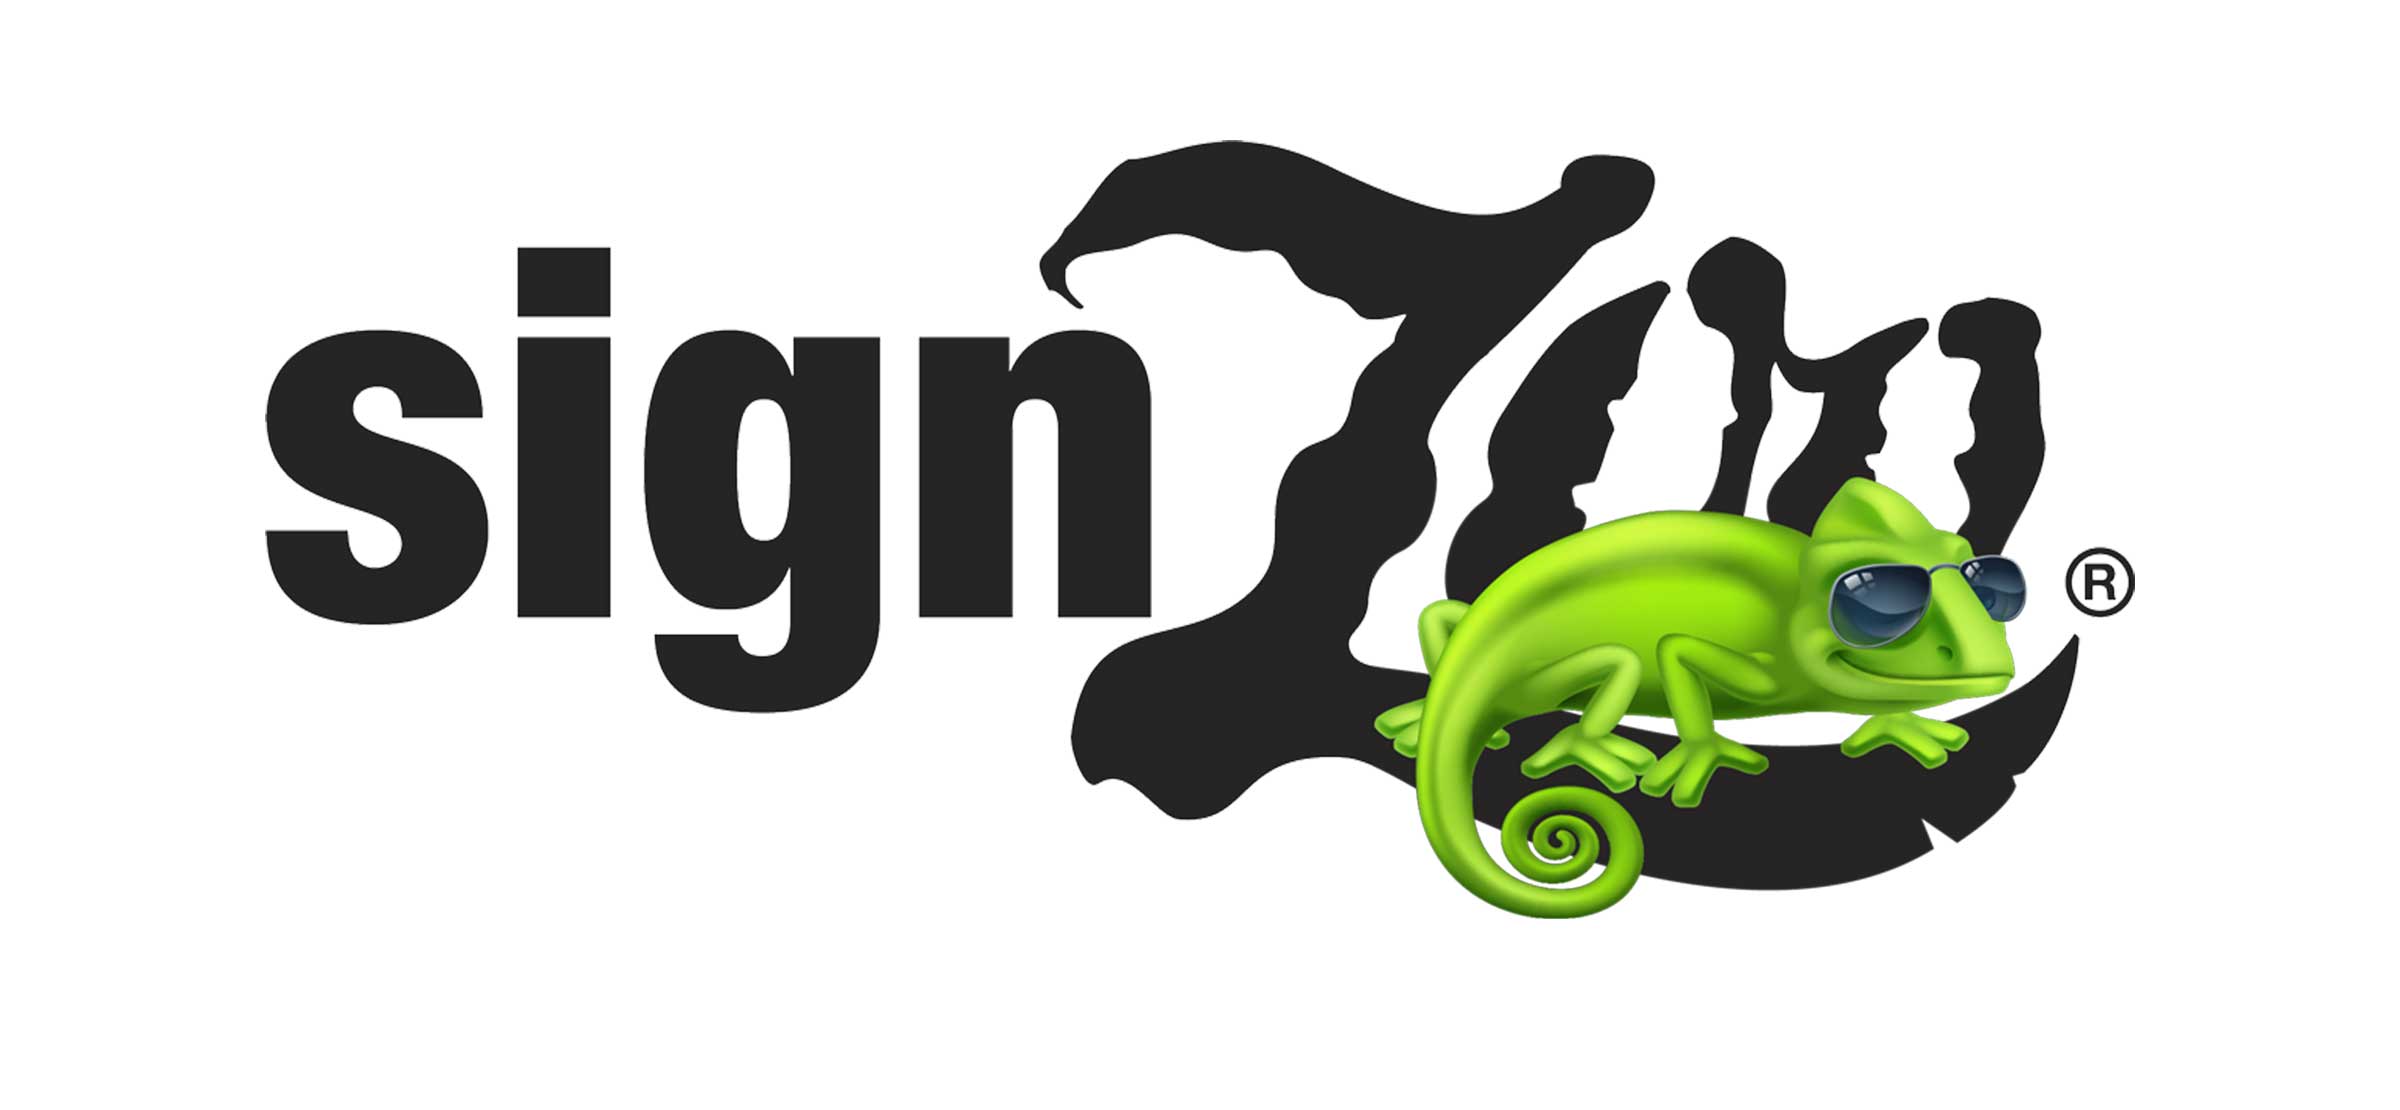 Tips for Logo Design: Part 2